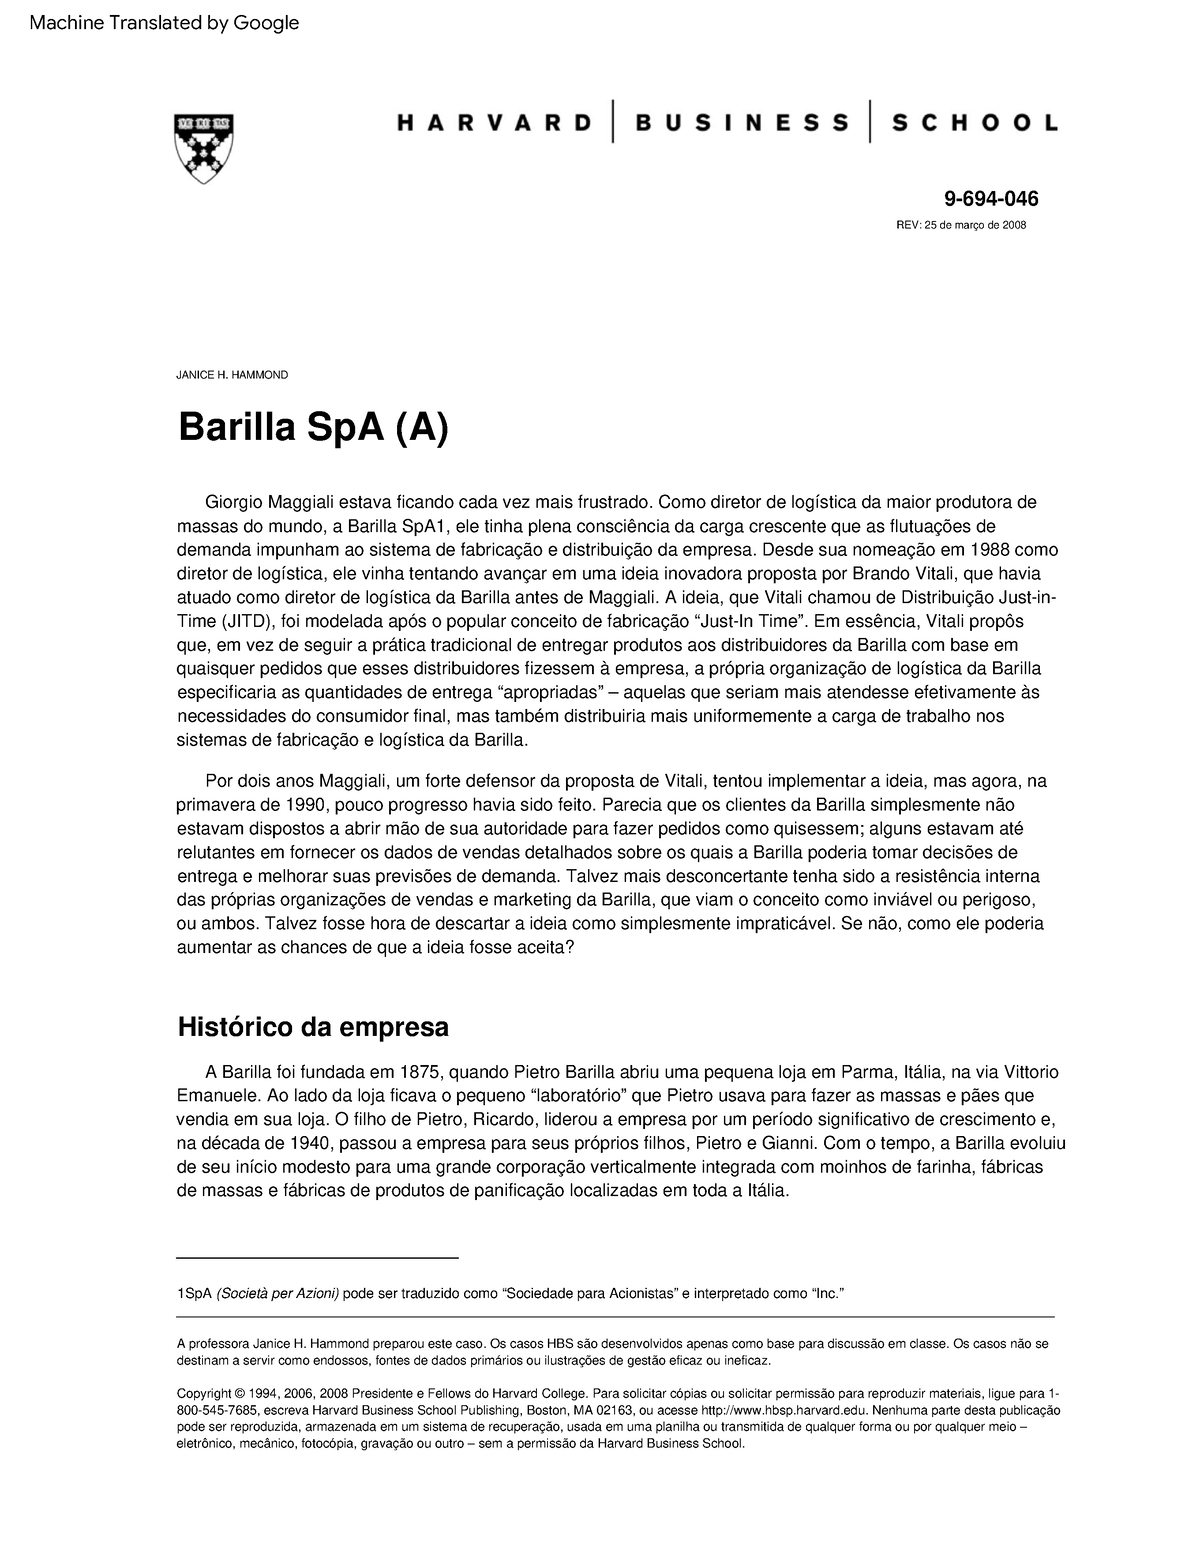 barilla spa case study answers